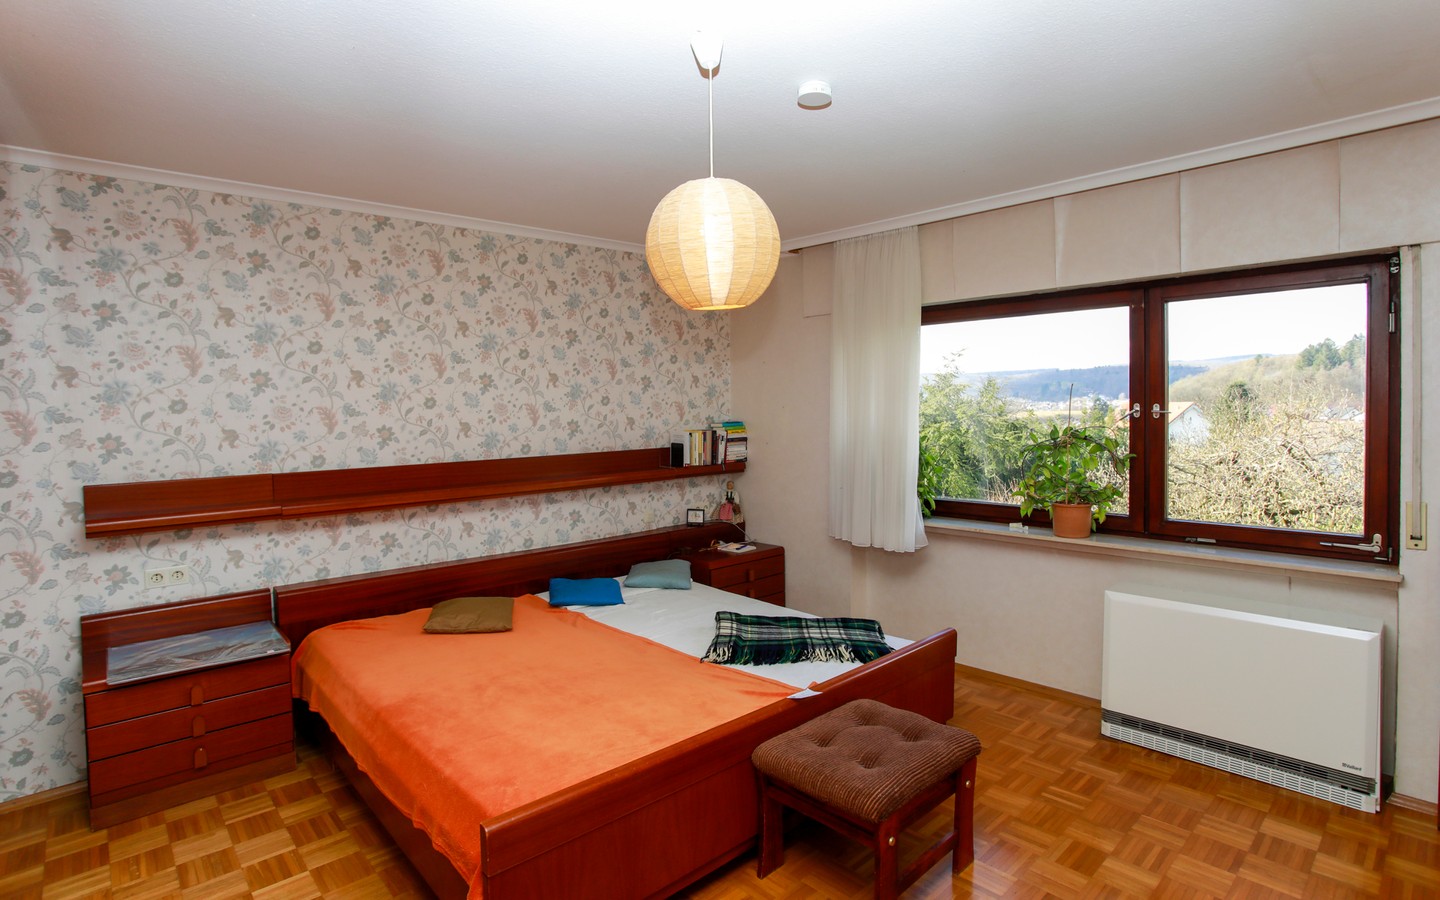 Schlafzimmer EG - Provisionsfrei: 3-Familienhaus auf über 1400 m² großem Grundstück in Bestlage von Wiesenbach